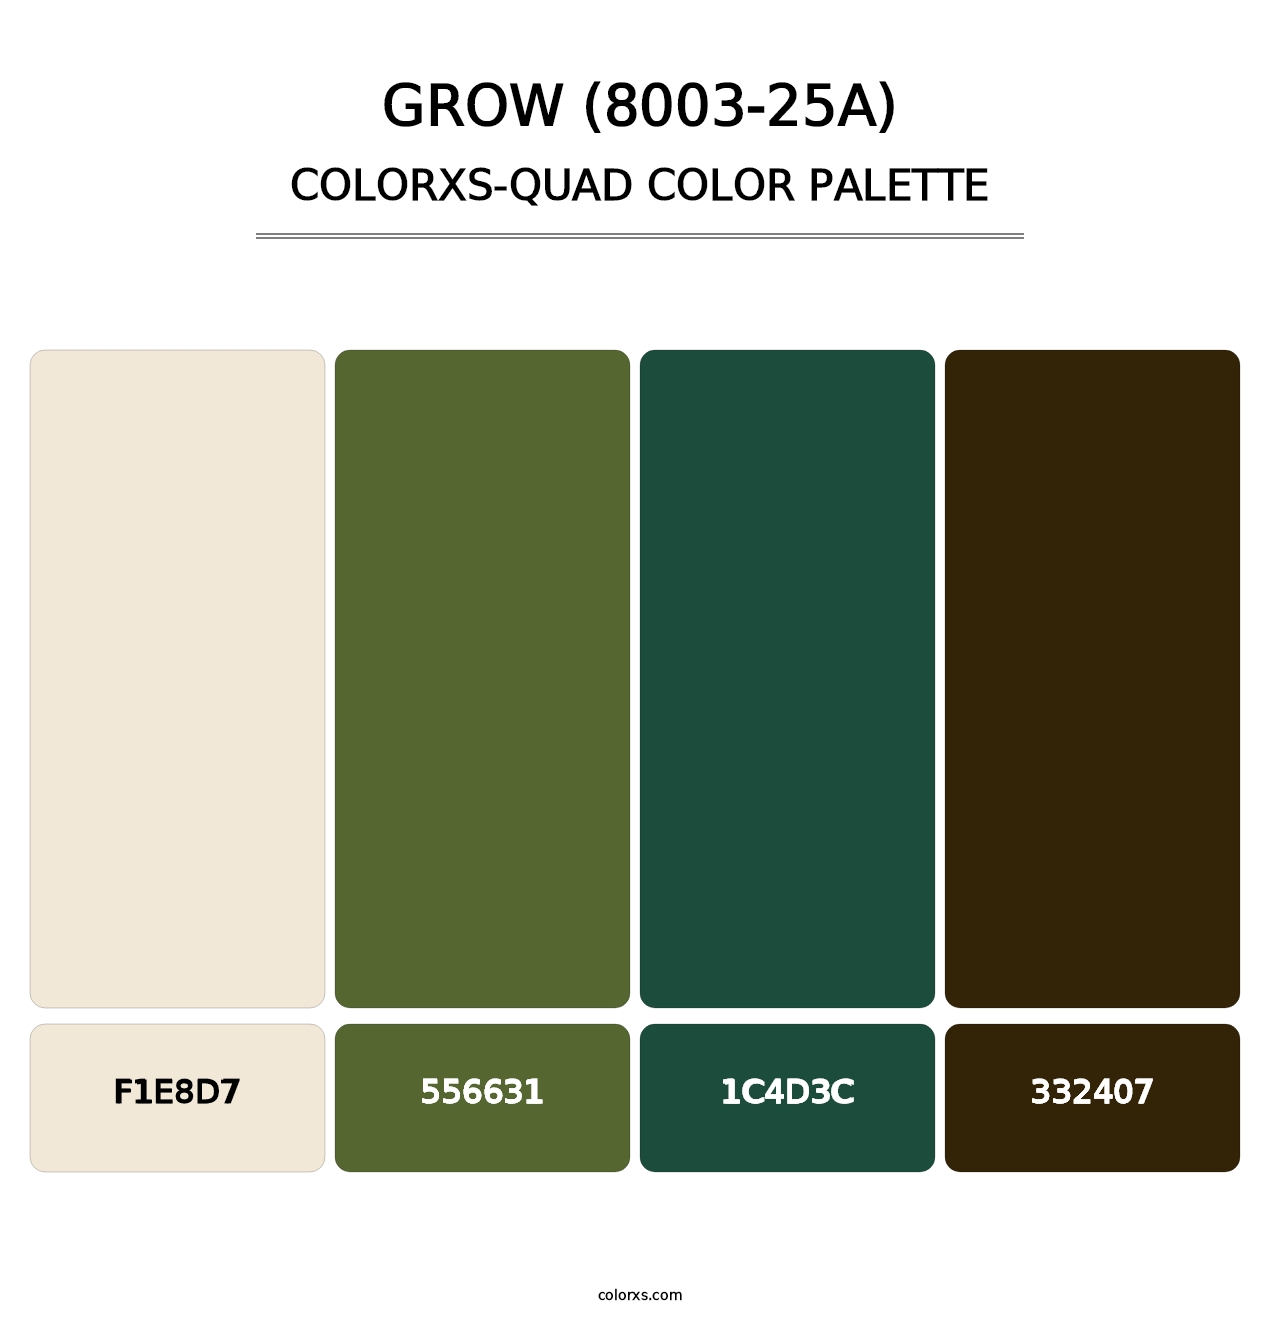 Grow (8003-25A) - Colorxs Quad Palette